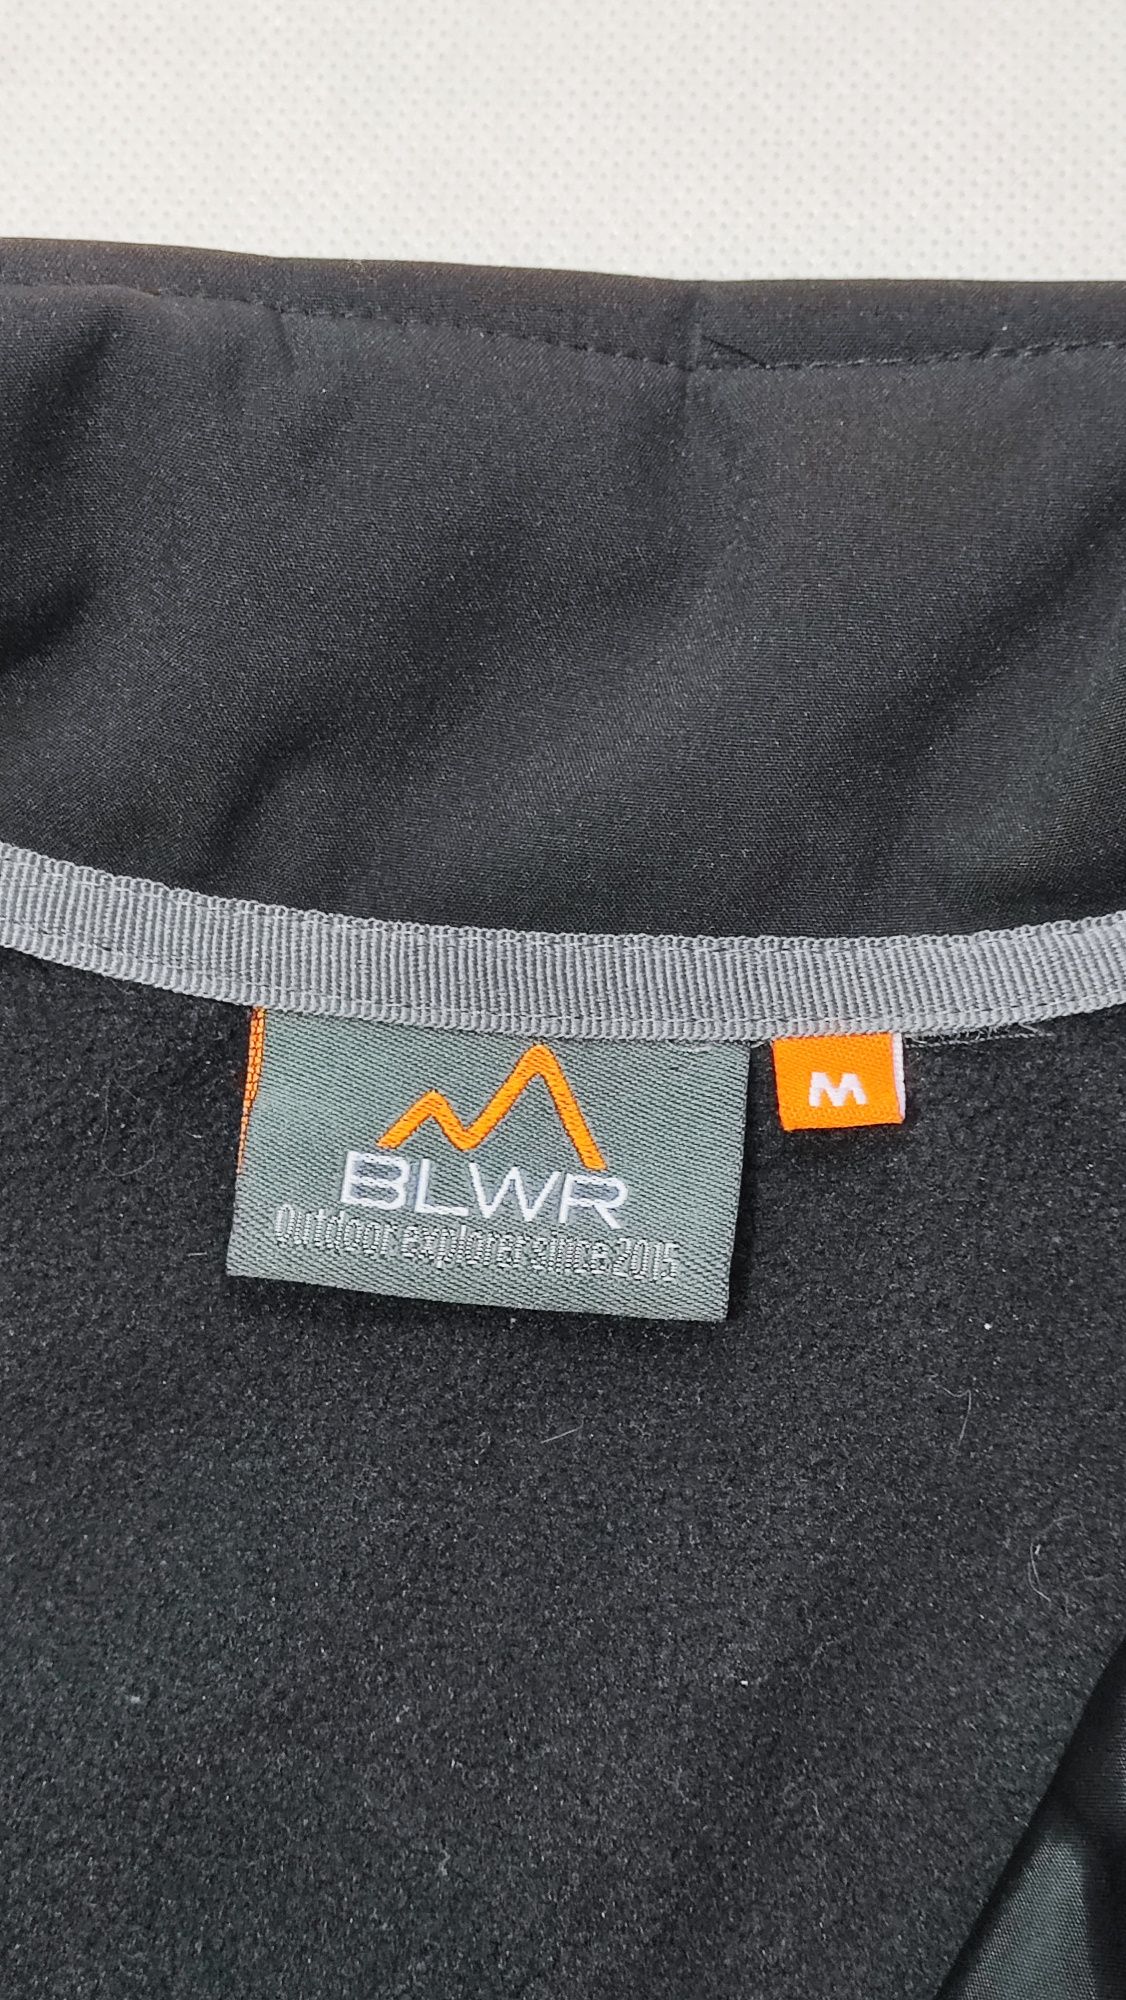 Bluza kurtka rozpinana robocza męska BLWR Bluewear rozmiar M